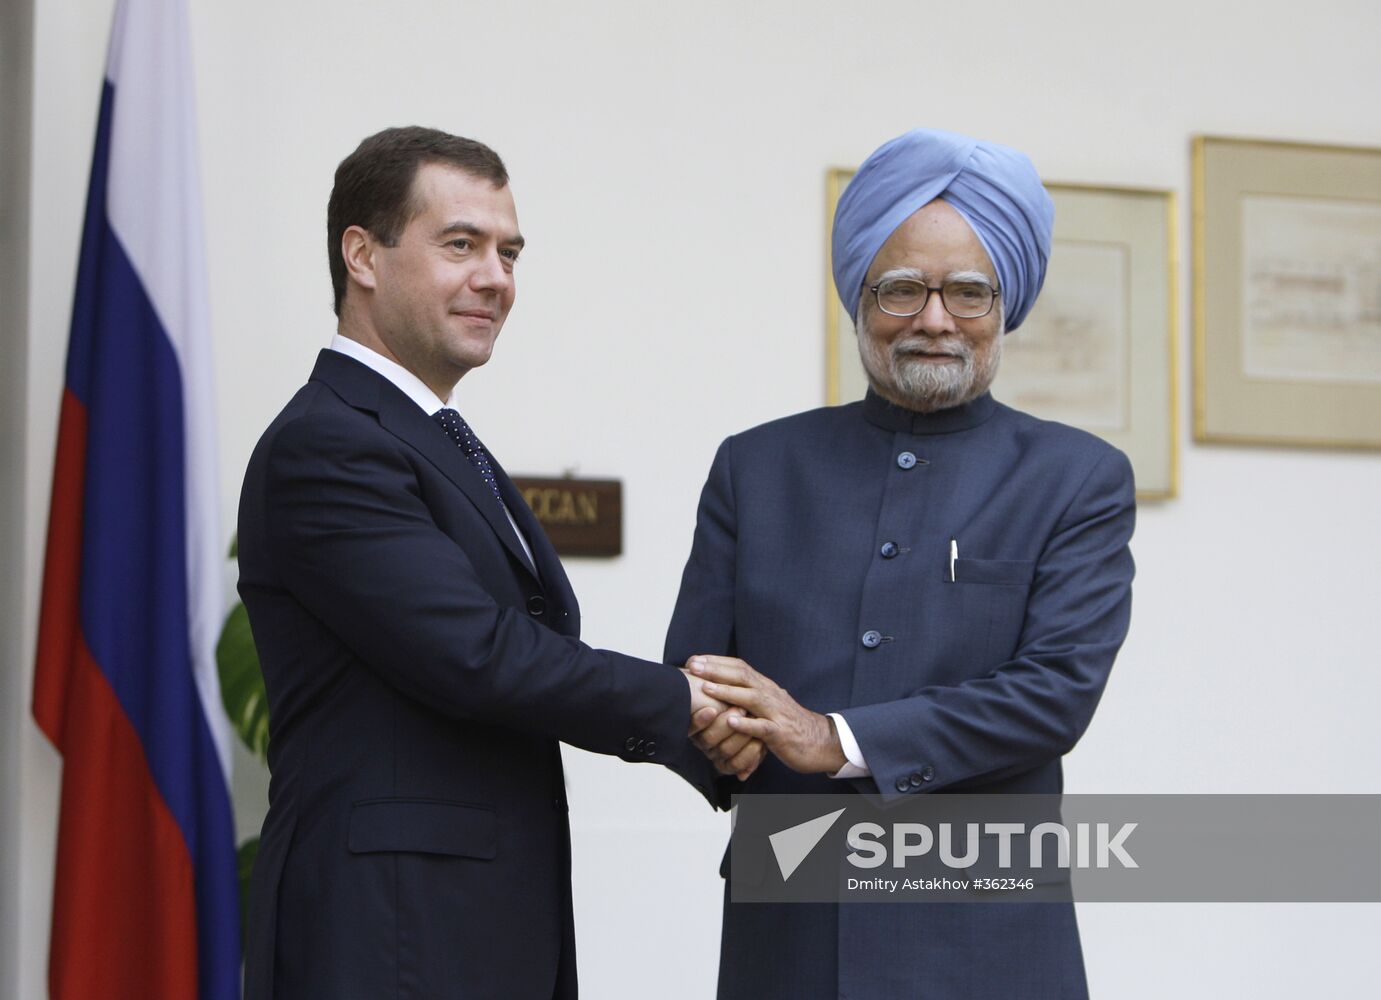 Dmitry Medvedev in India